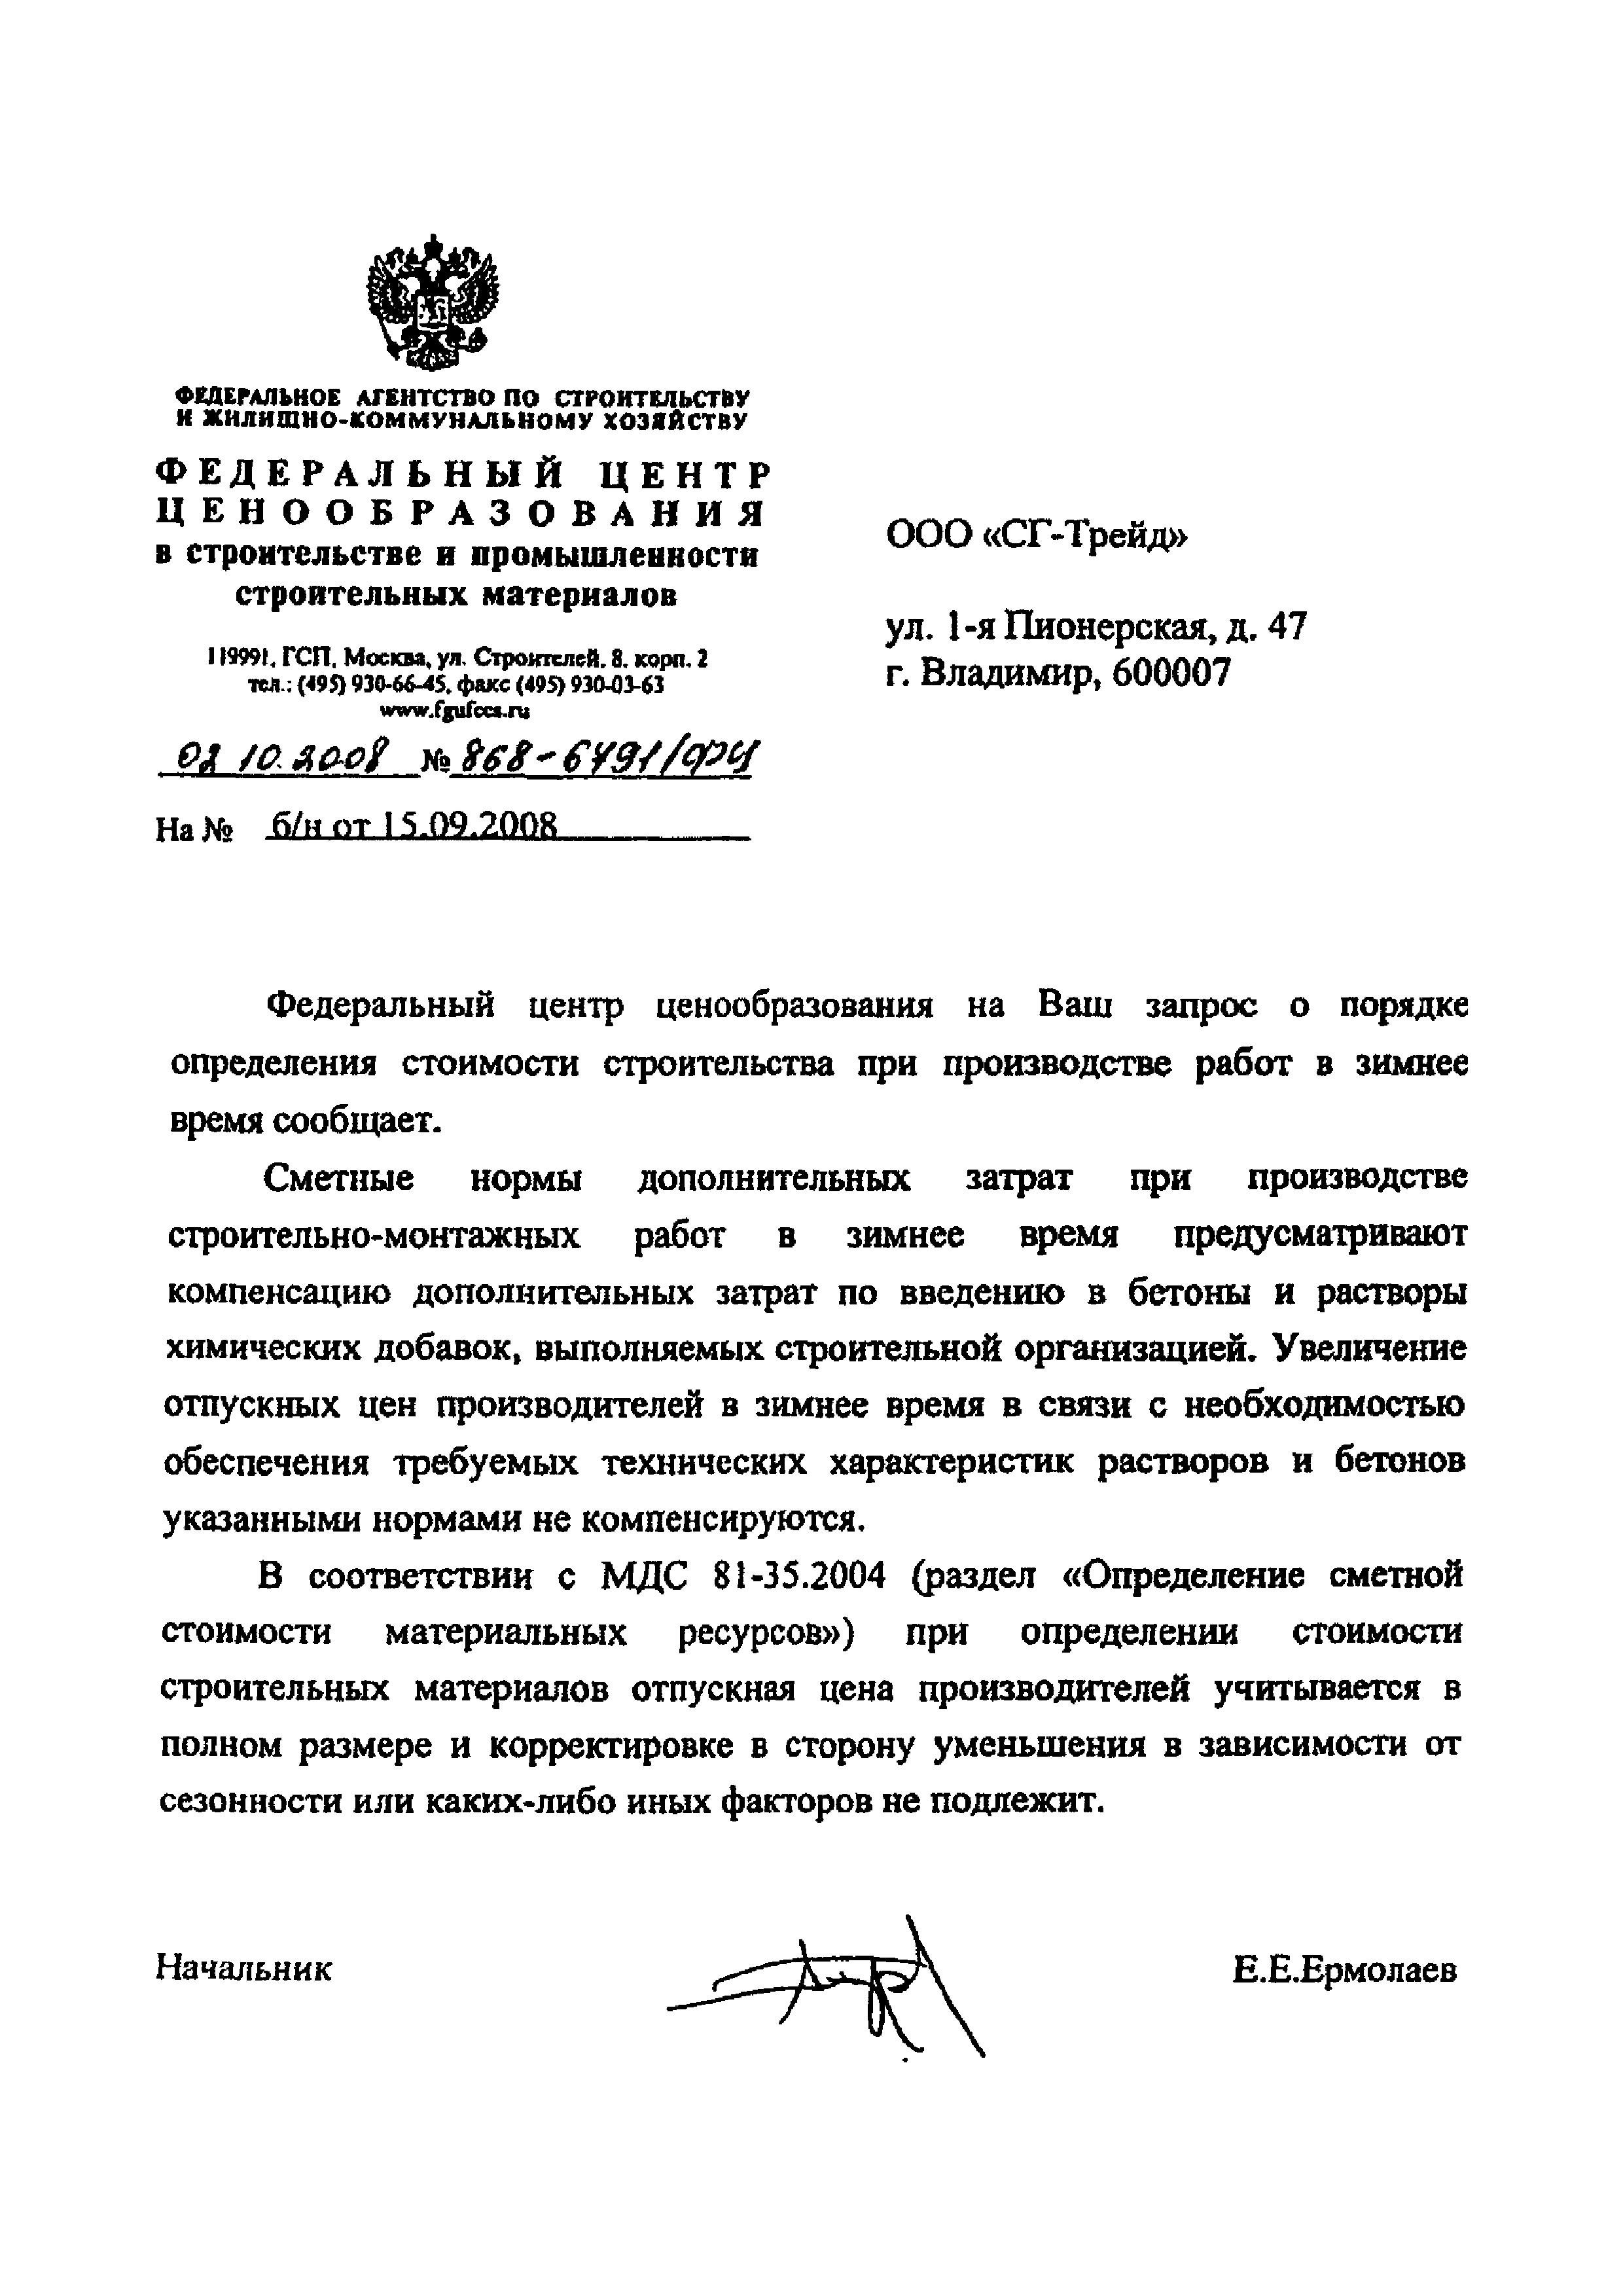 Письмо 868-6791/ФЦ